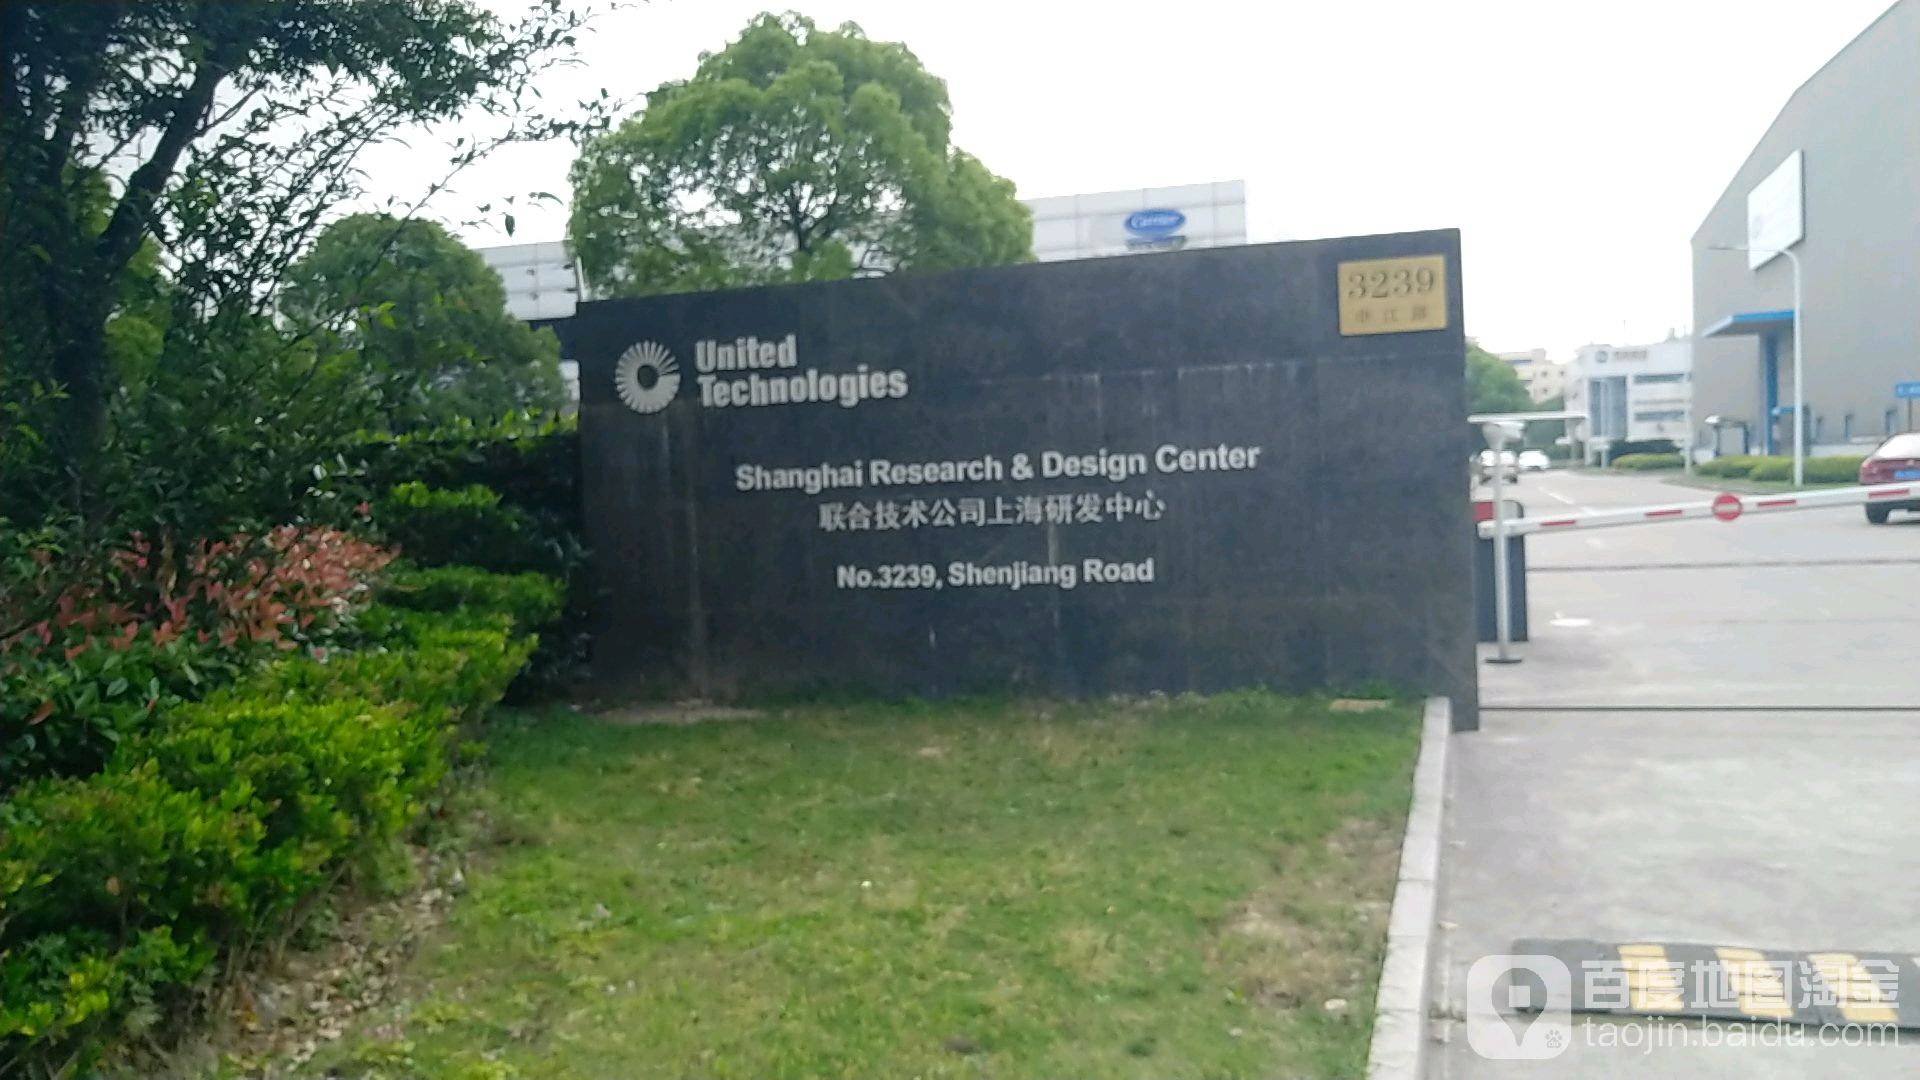 开利联合技术研究中心(中国)有限公